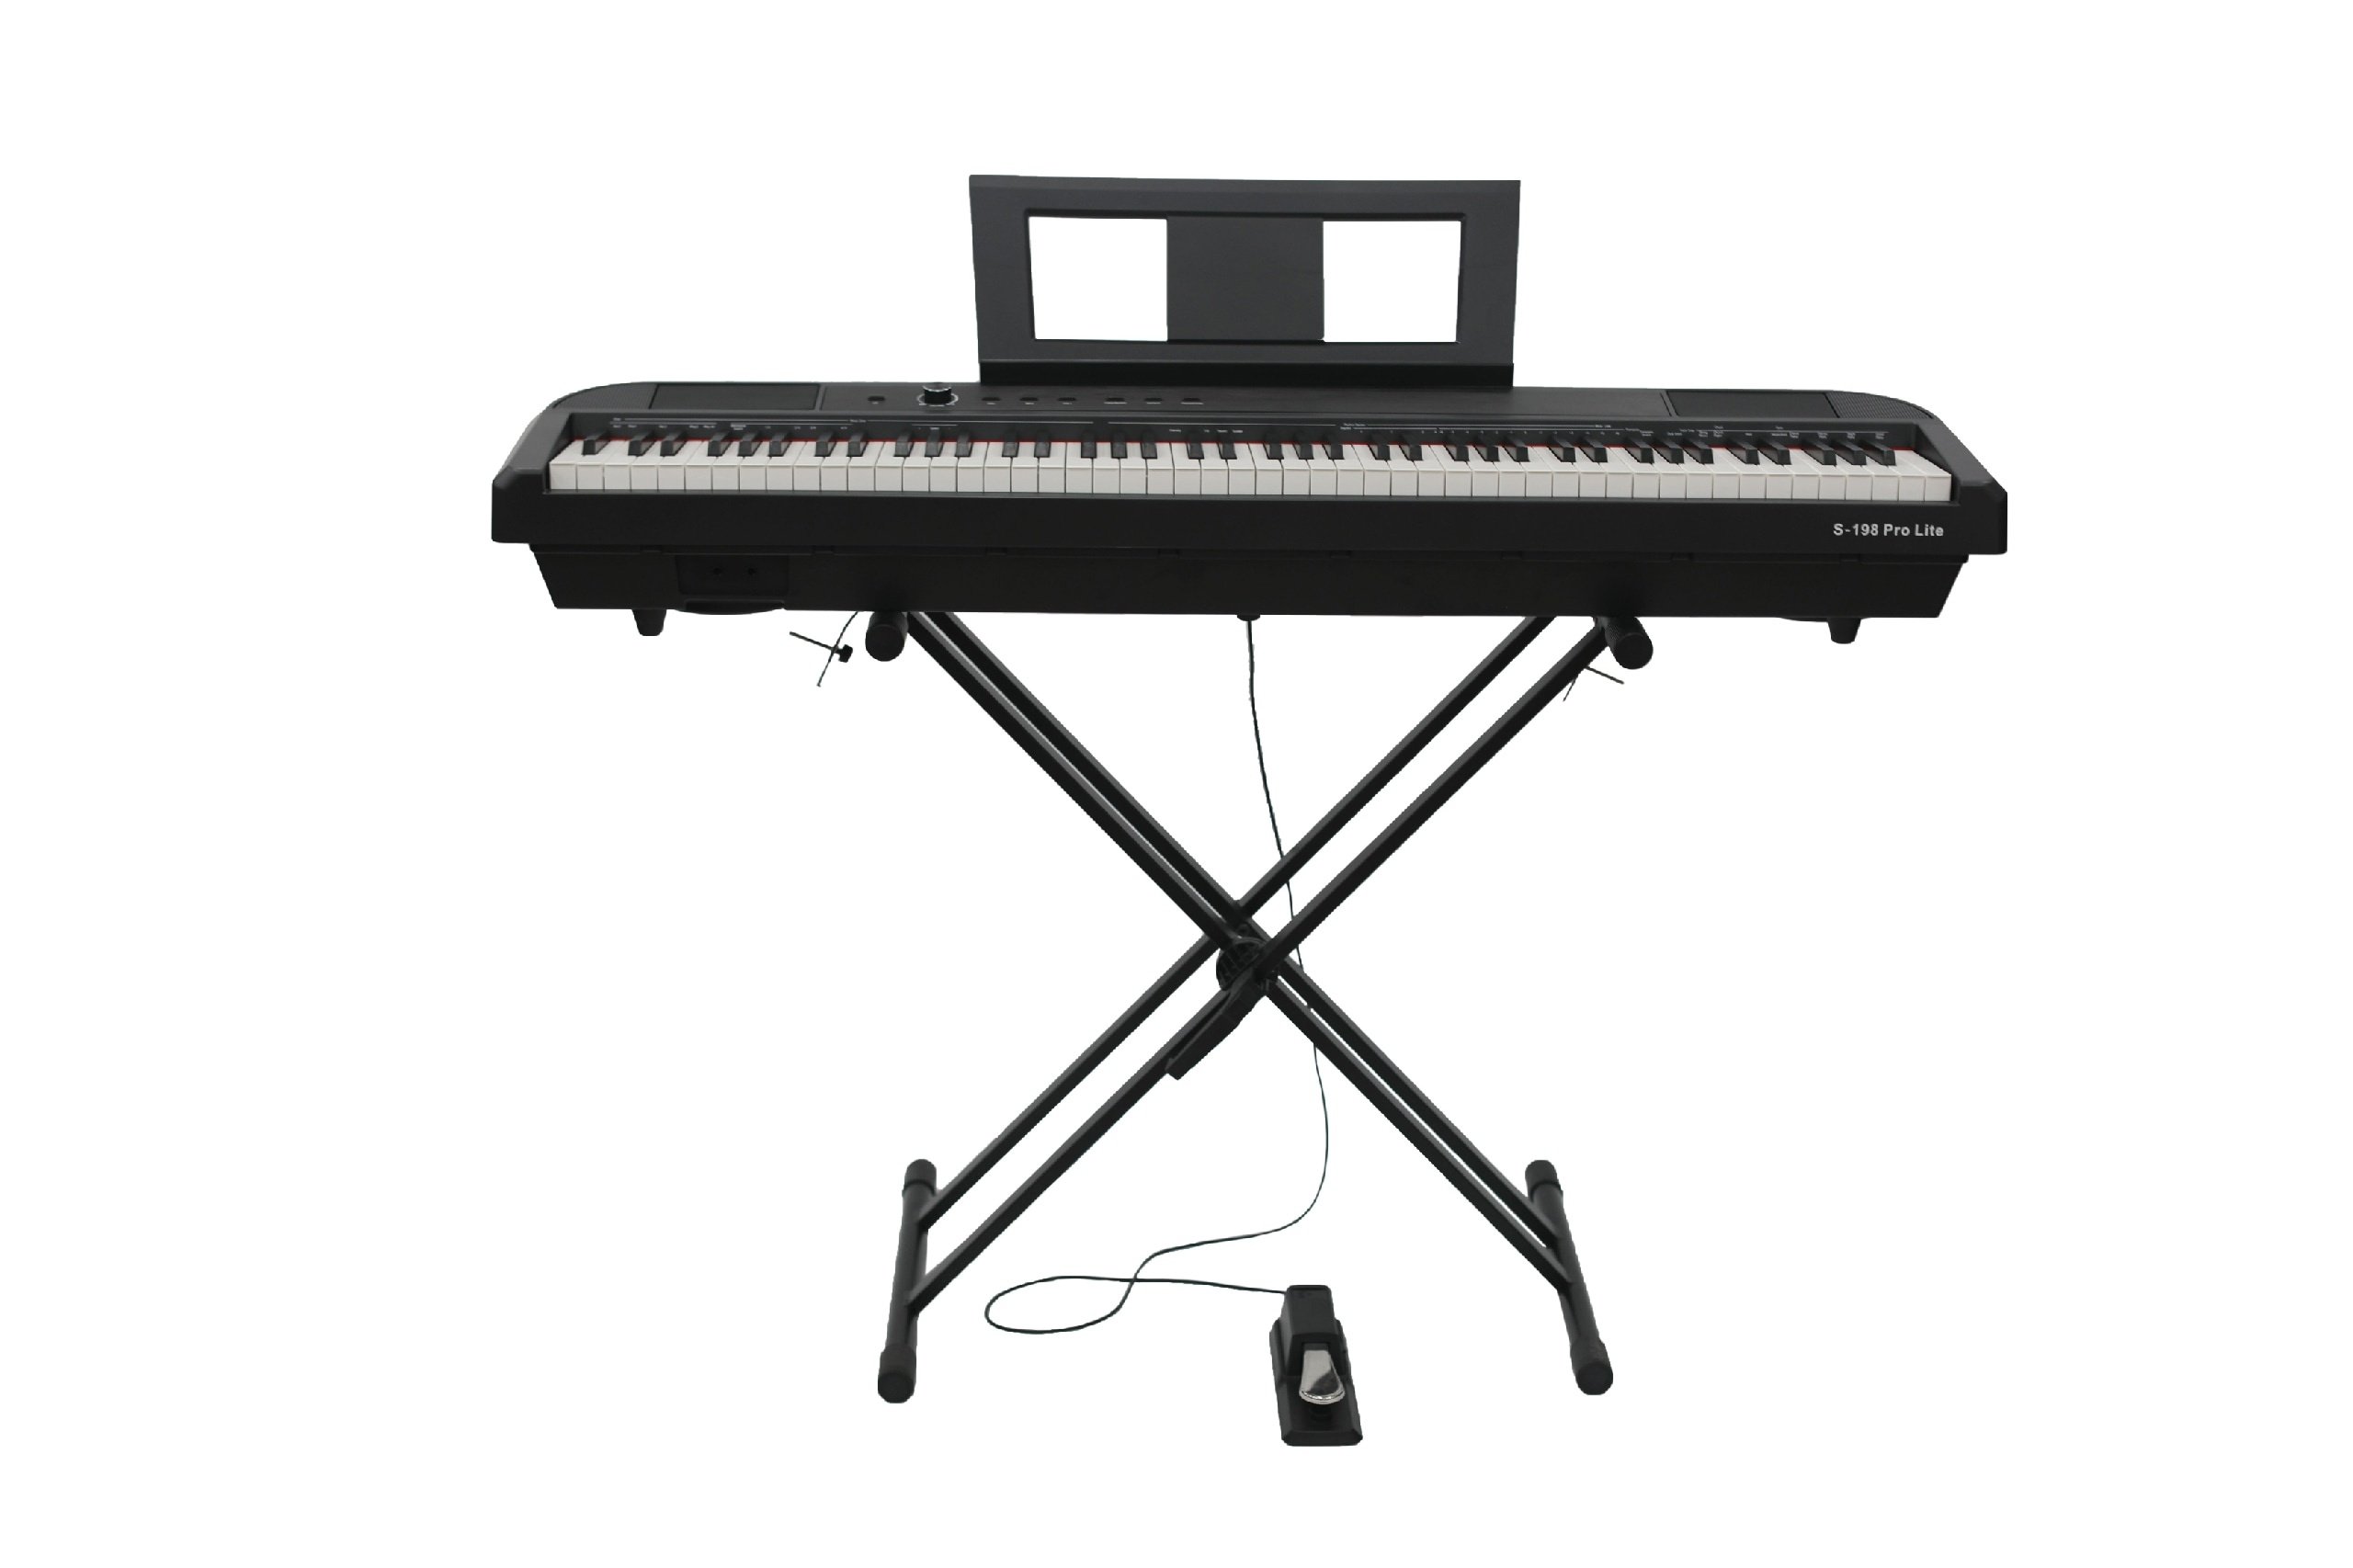 Beisite S-198 Pro Lite Цифровое пианино. Черный. Клавиатура: 88 полновзвешенных градуированных клавиш